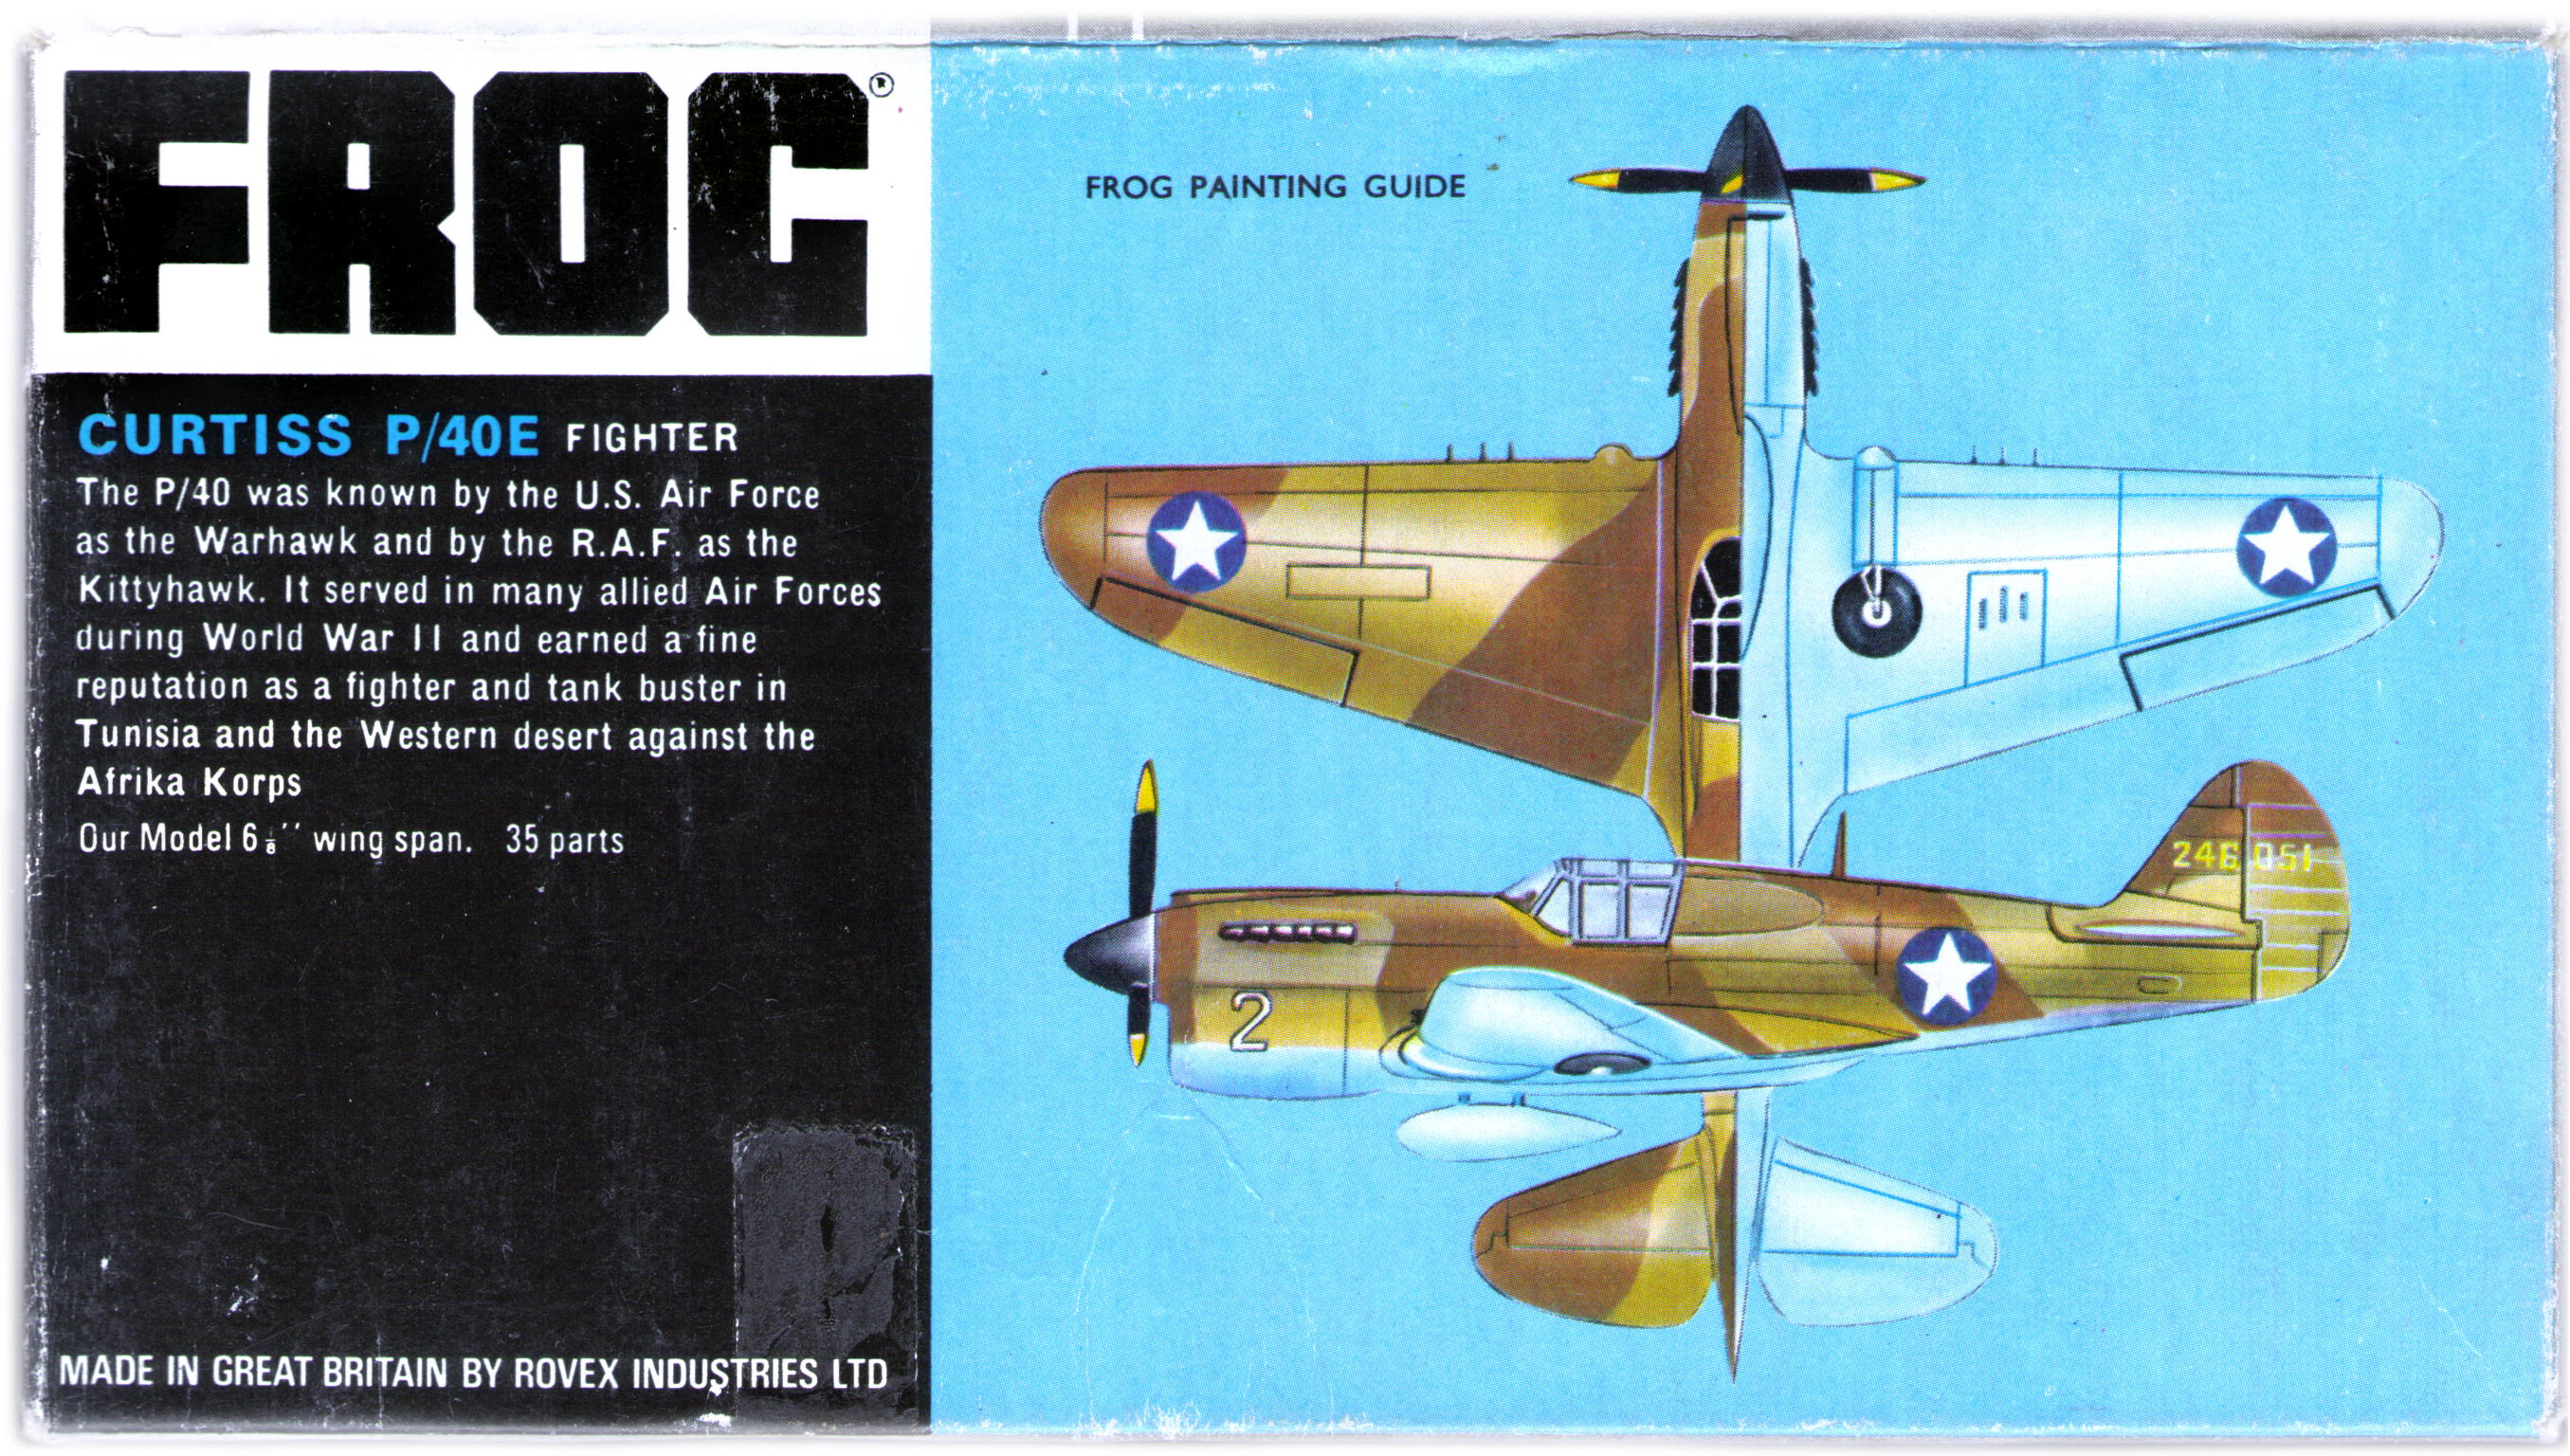 Схема окраски FROG F391 Curtiss P-40E Warhawk (Kittyhawk IA), Black series, Rovex Industries Ltd, 1966-67